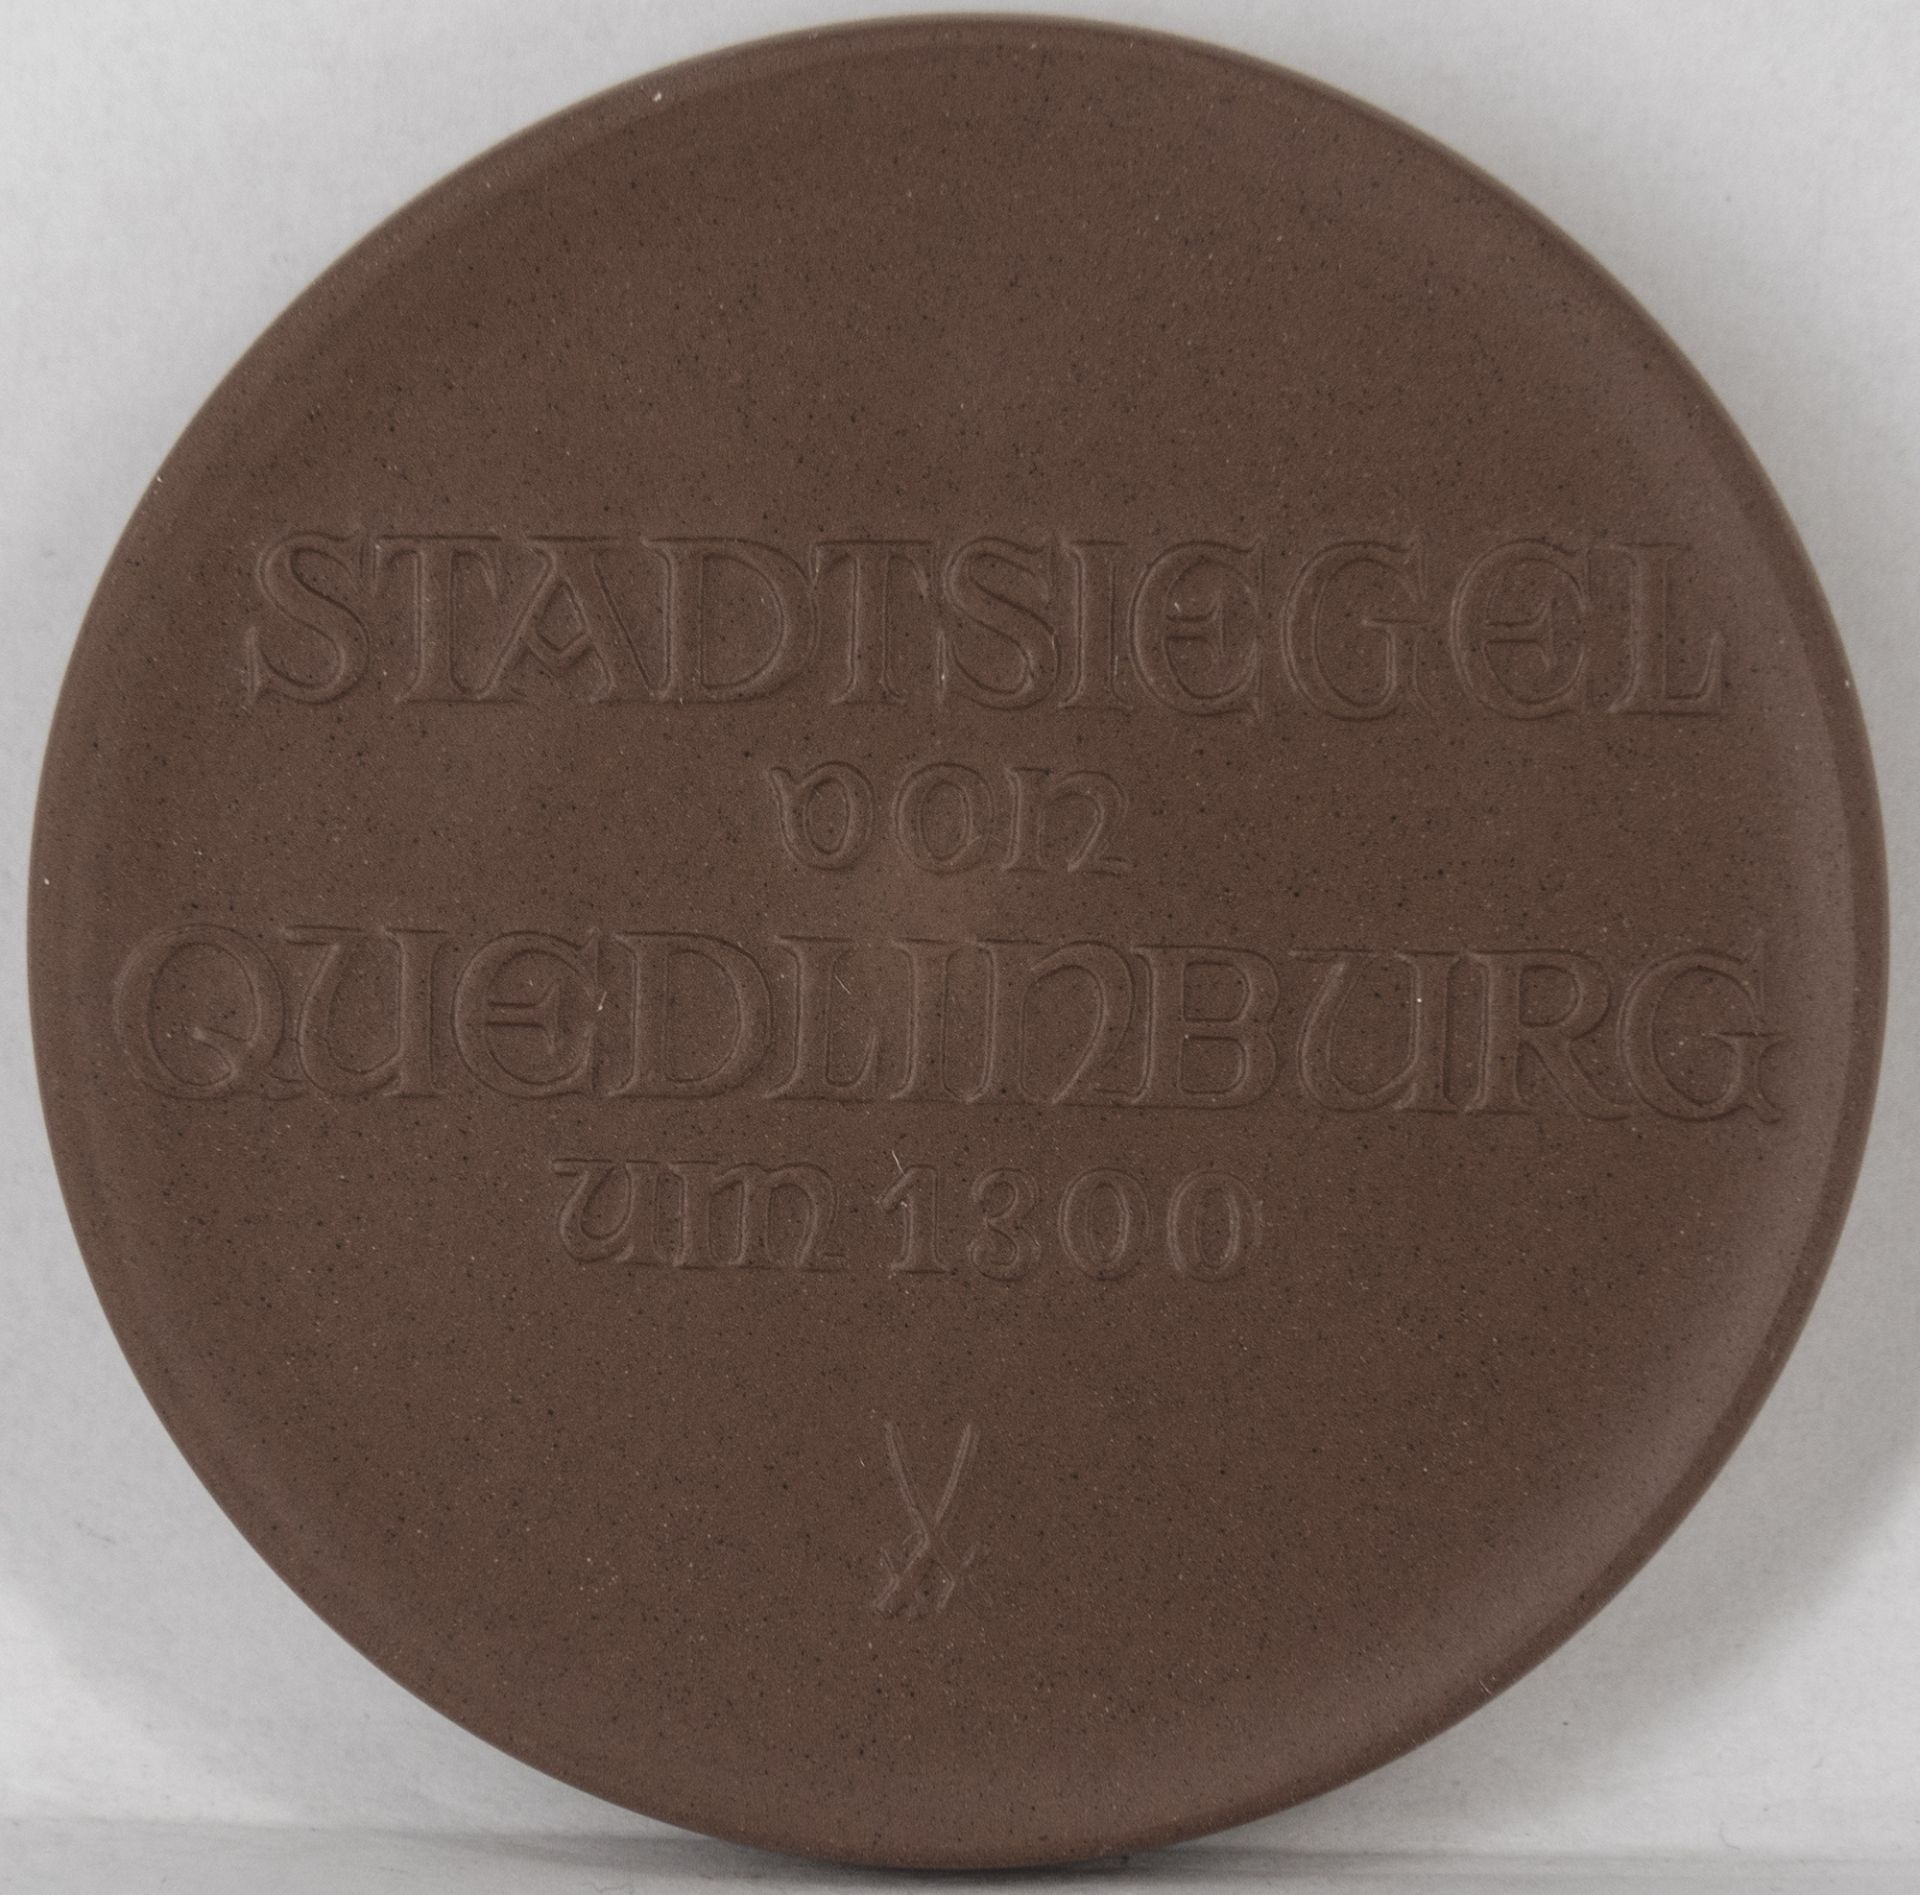 Porzellan - Medaille "Stadtsiegel von Quedlinburg um 1300", Meißen, Durchmesser: ca. 67 mm. - Image 2 of 2